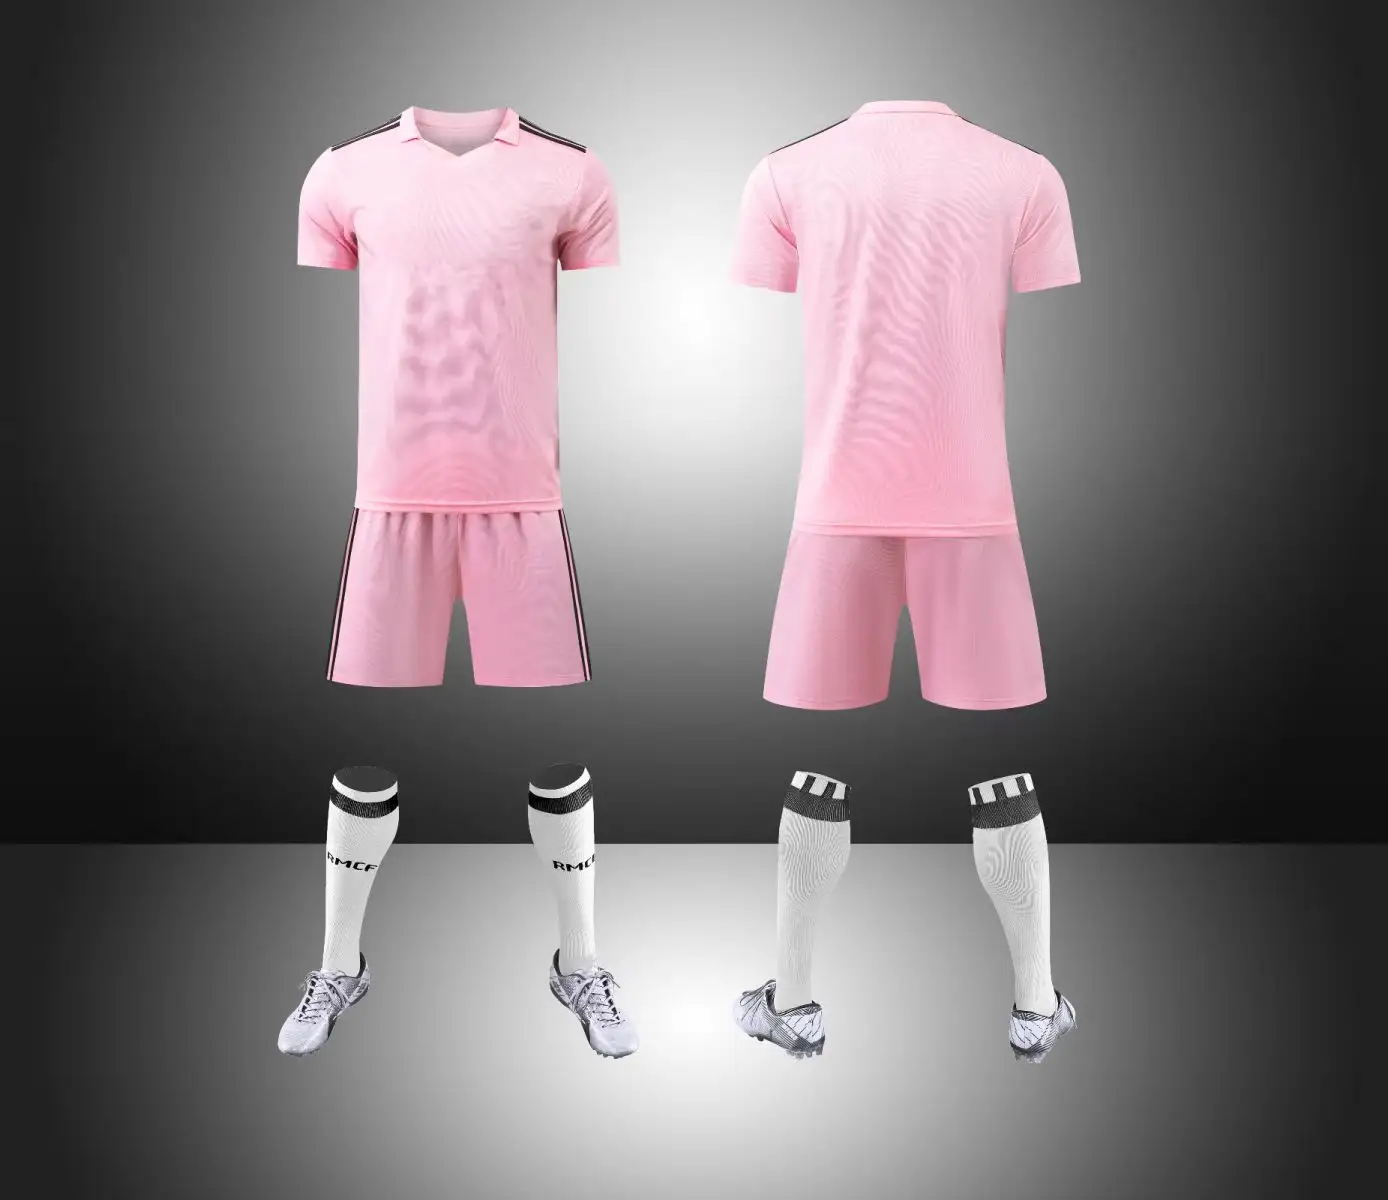 HLN 무료 인쇄 로고 축구 팀 착용 저렴한 맞춤형 스포츠 저지 새로운 모델 최신 축구 저지 디자인 축구 유니폼